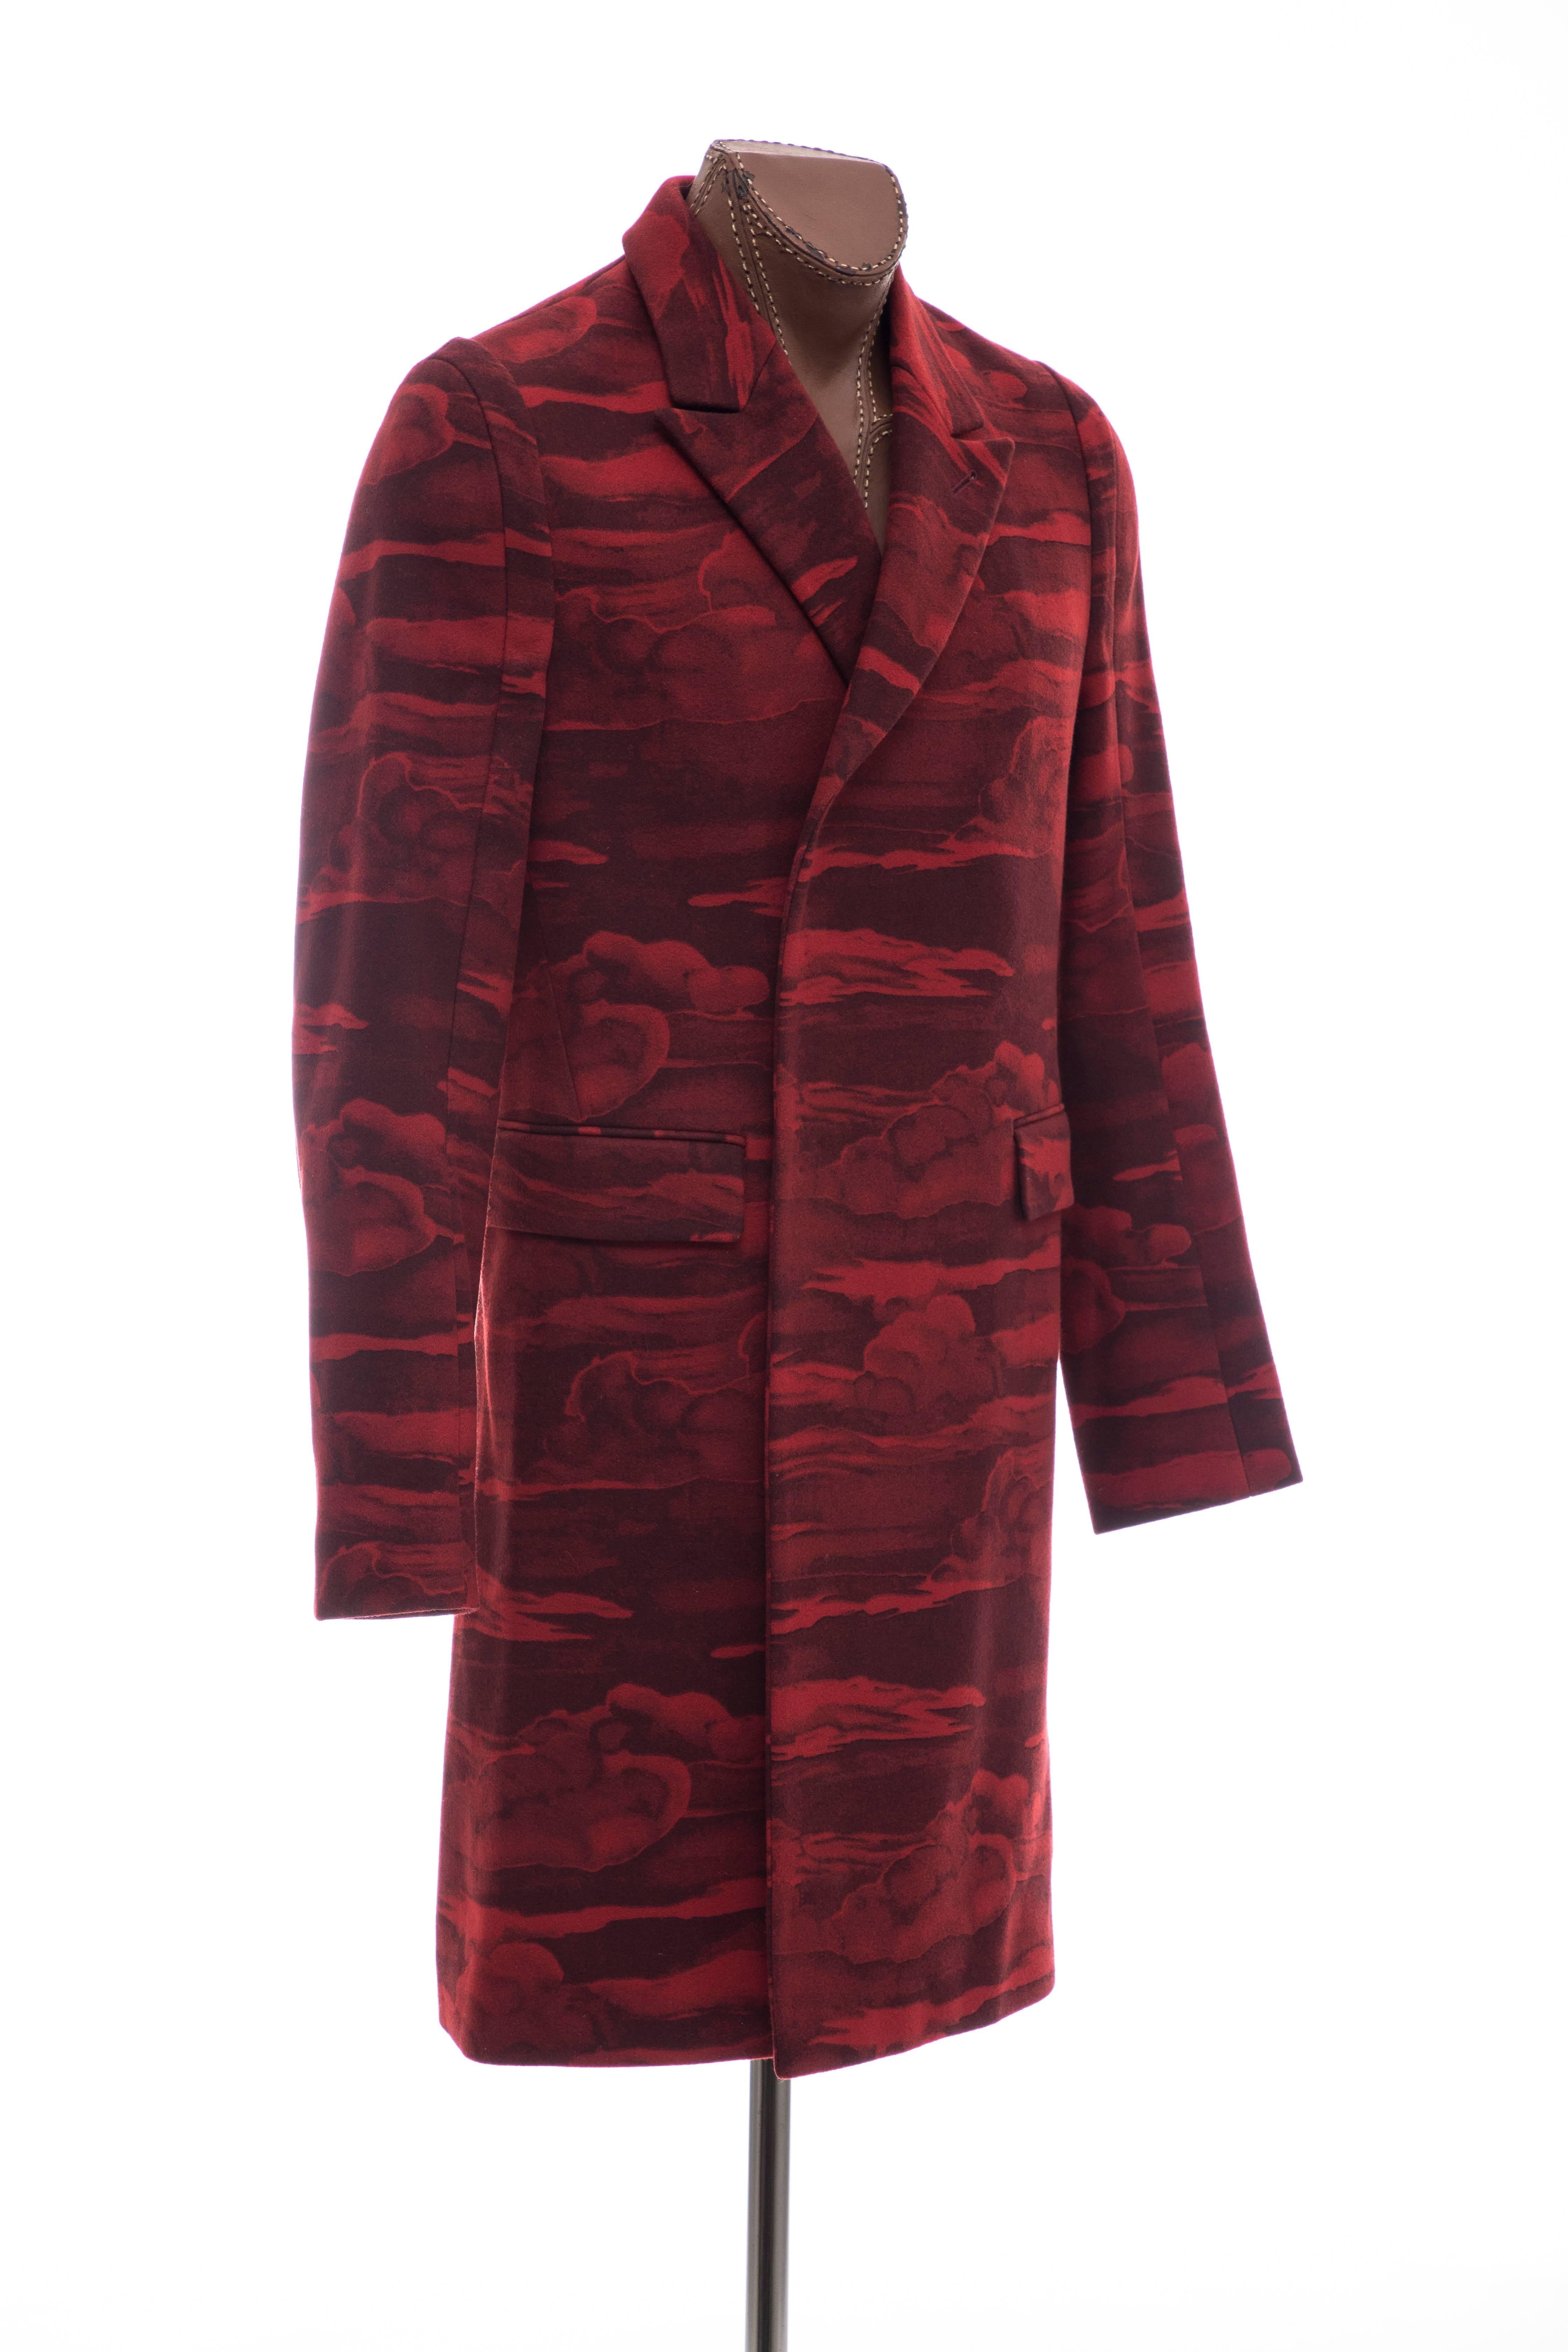 Brown Kenzo Men's Runway Wool Red Cloud Print Coat, Fall 2013